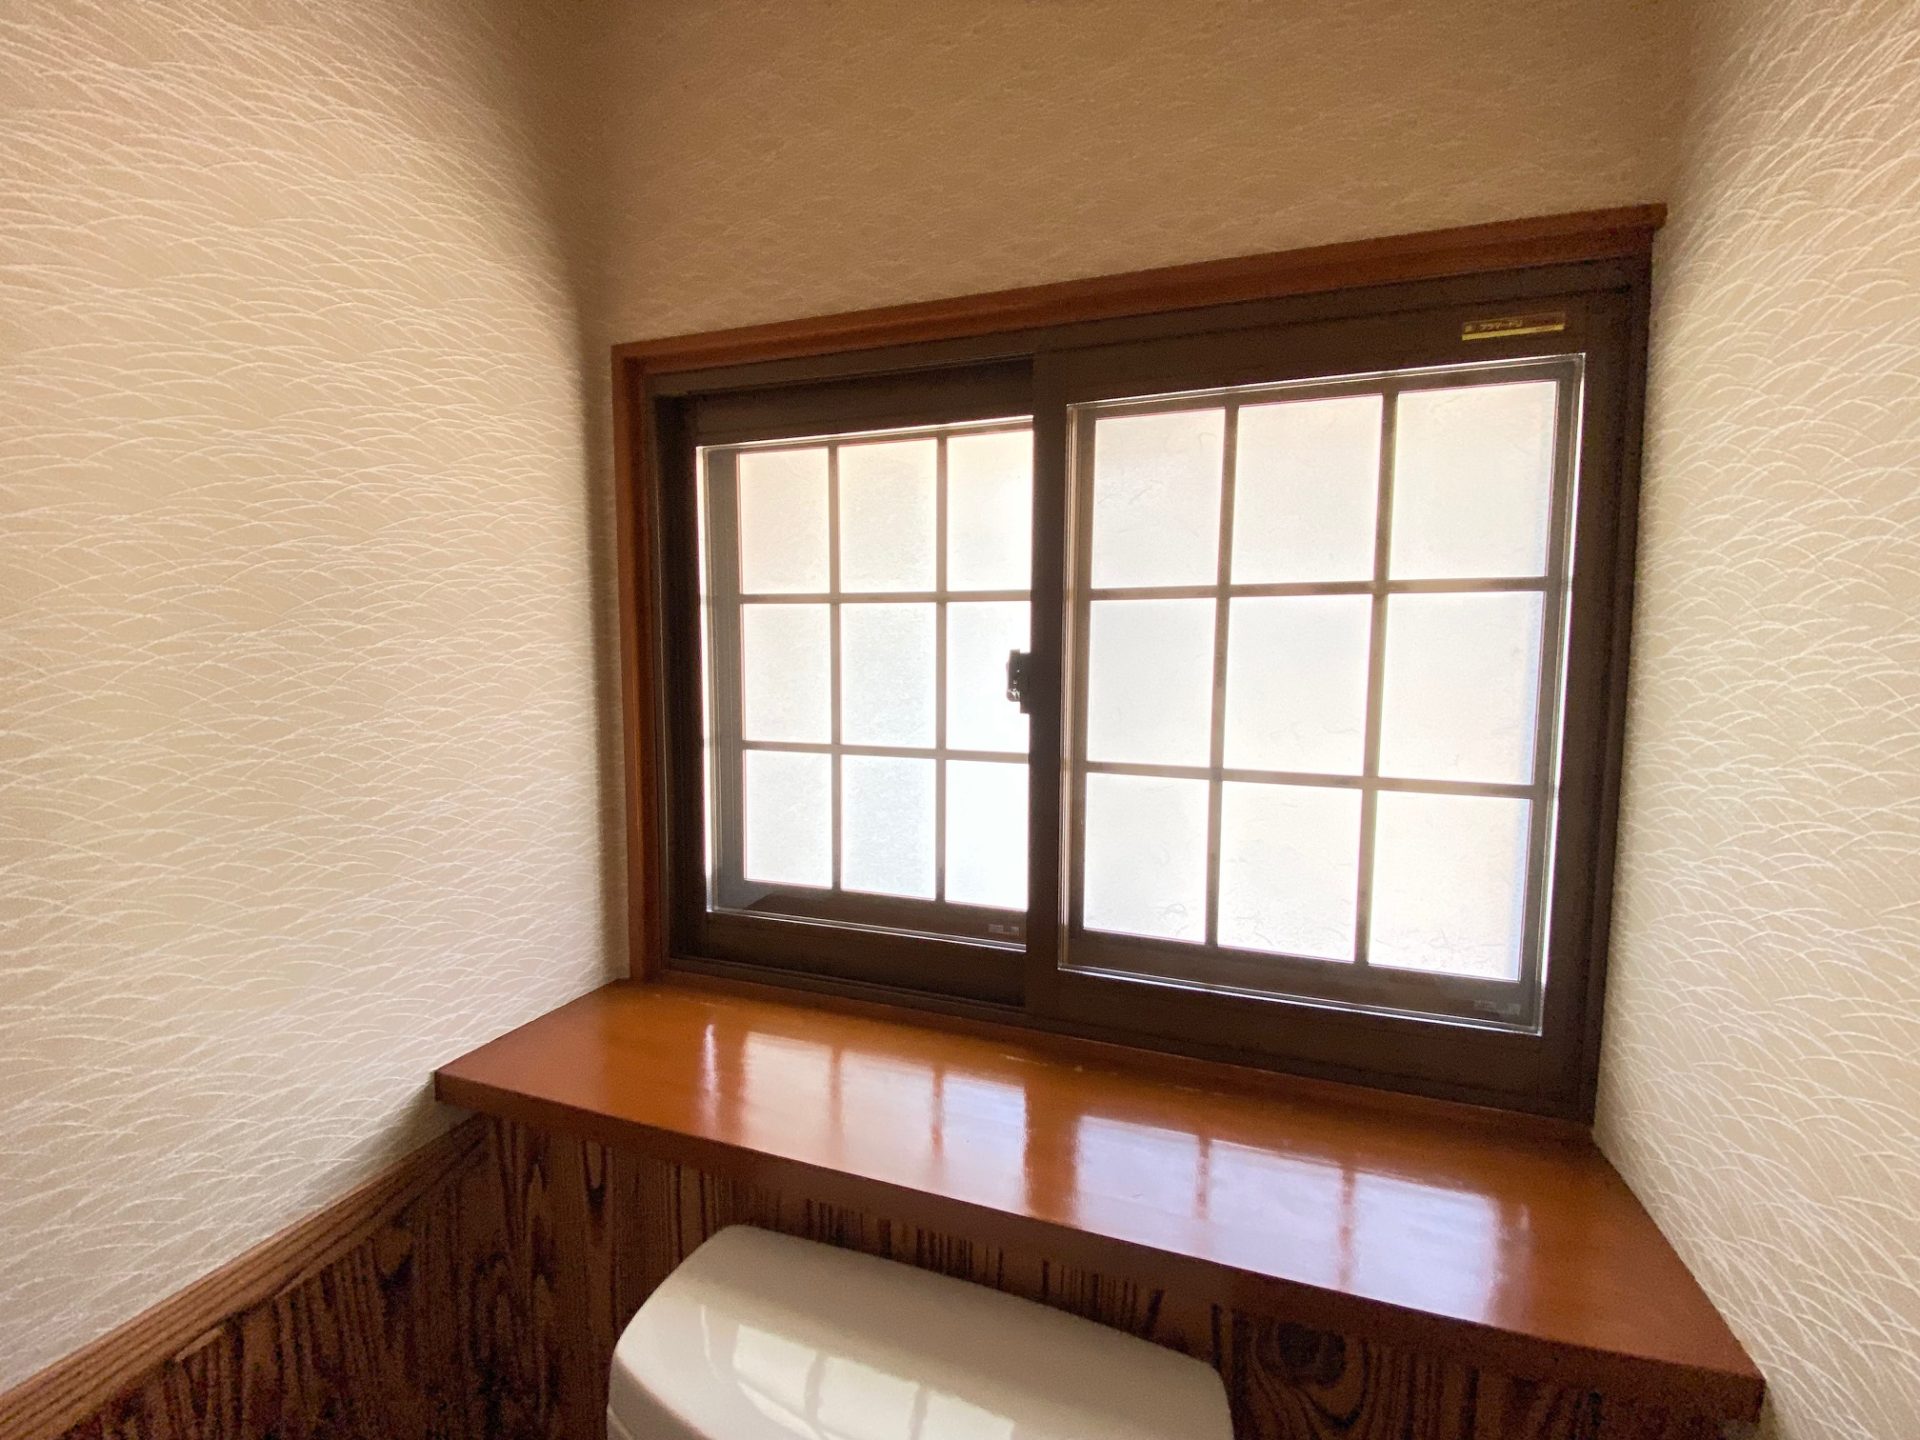 新潟市　室内の雰囲気も考えた内窓の製品選定の施工事例